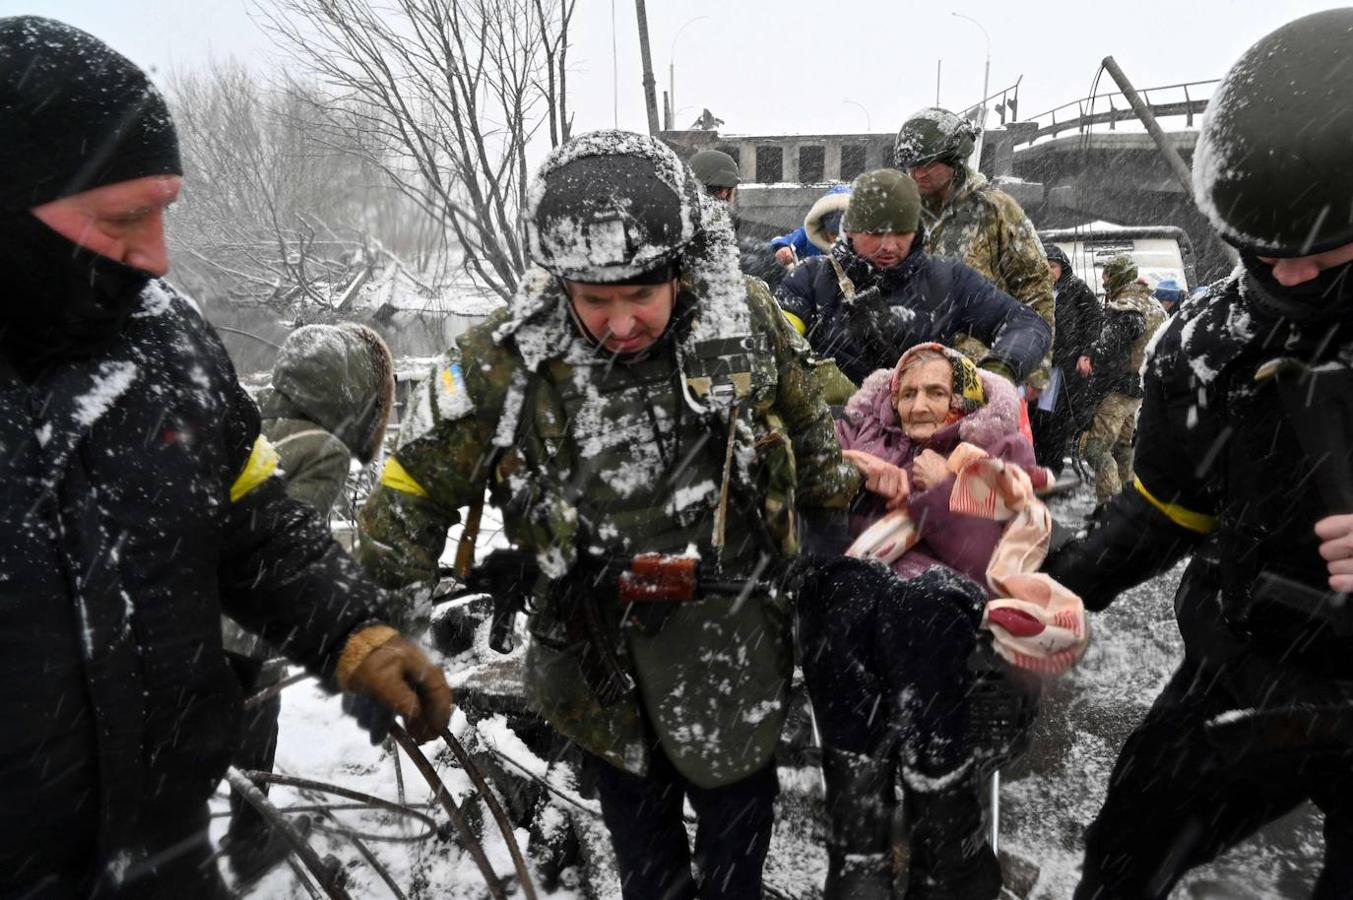 La guerra, décadas después. Ucranianos de avanzada edad que sufrieron con toda su crudeza los horrores de la II Guerra Mundial vuelven a padecer un conflicto bélico en su territorio.